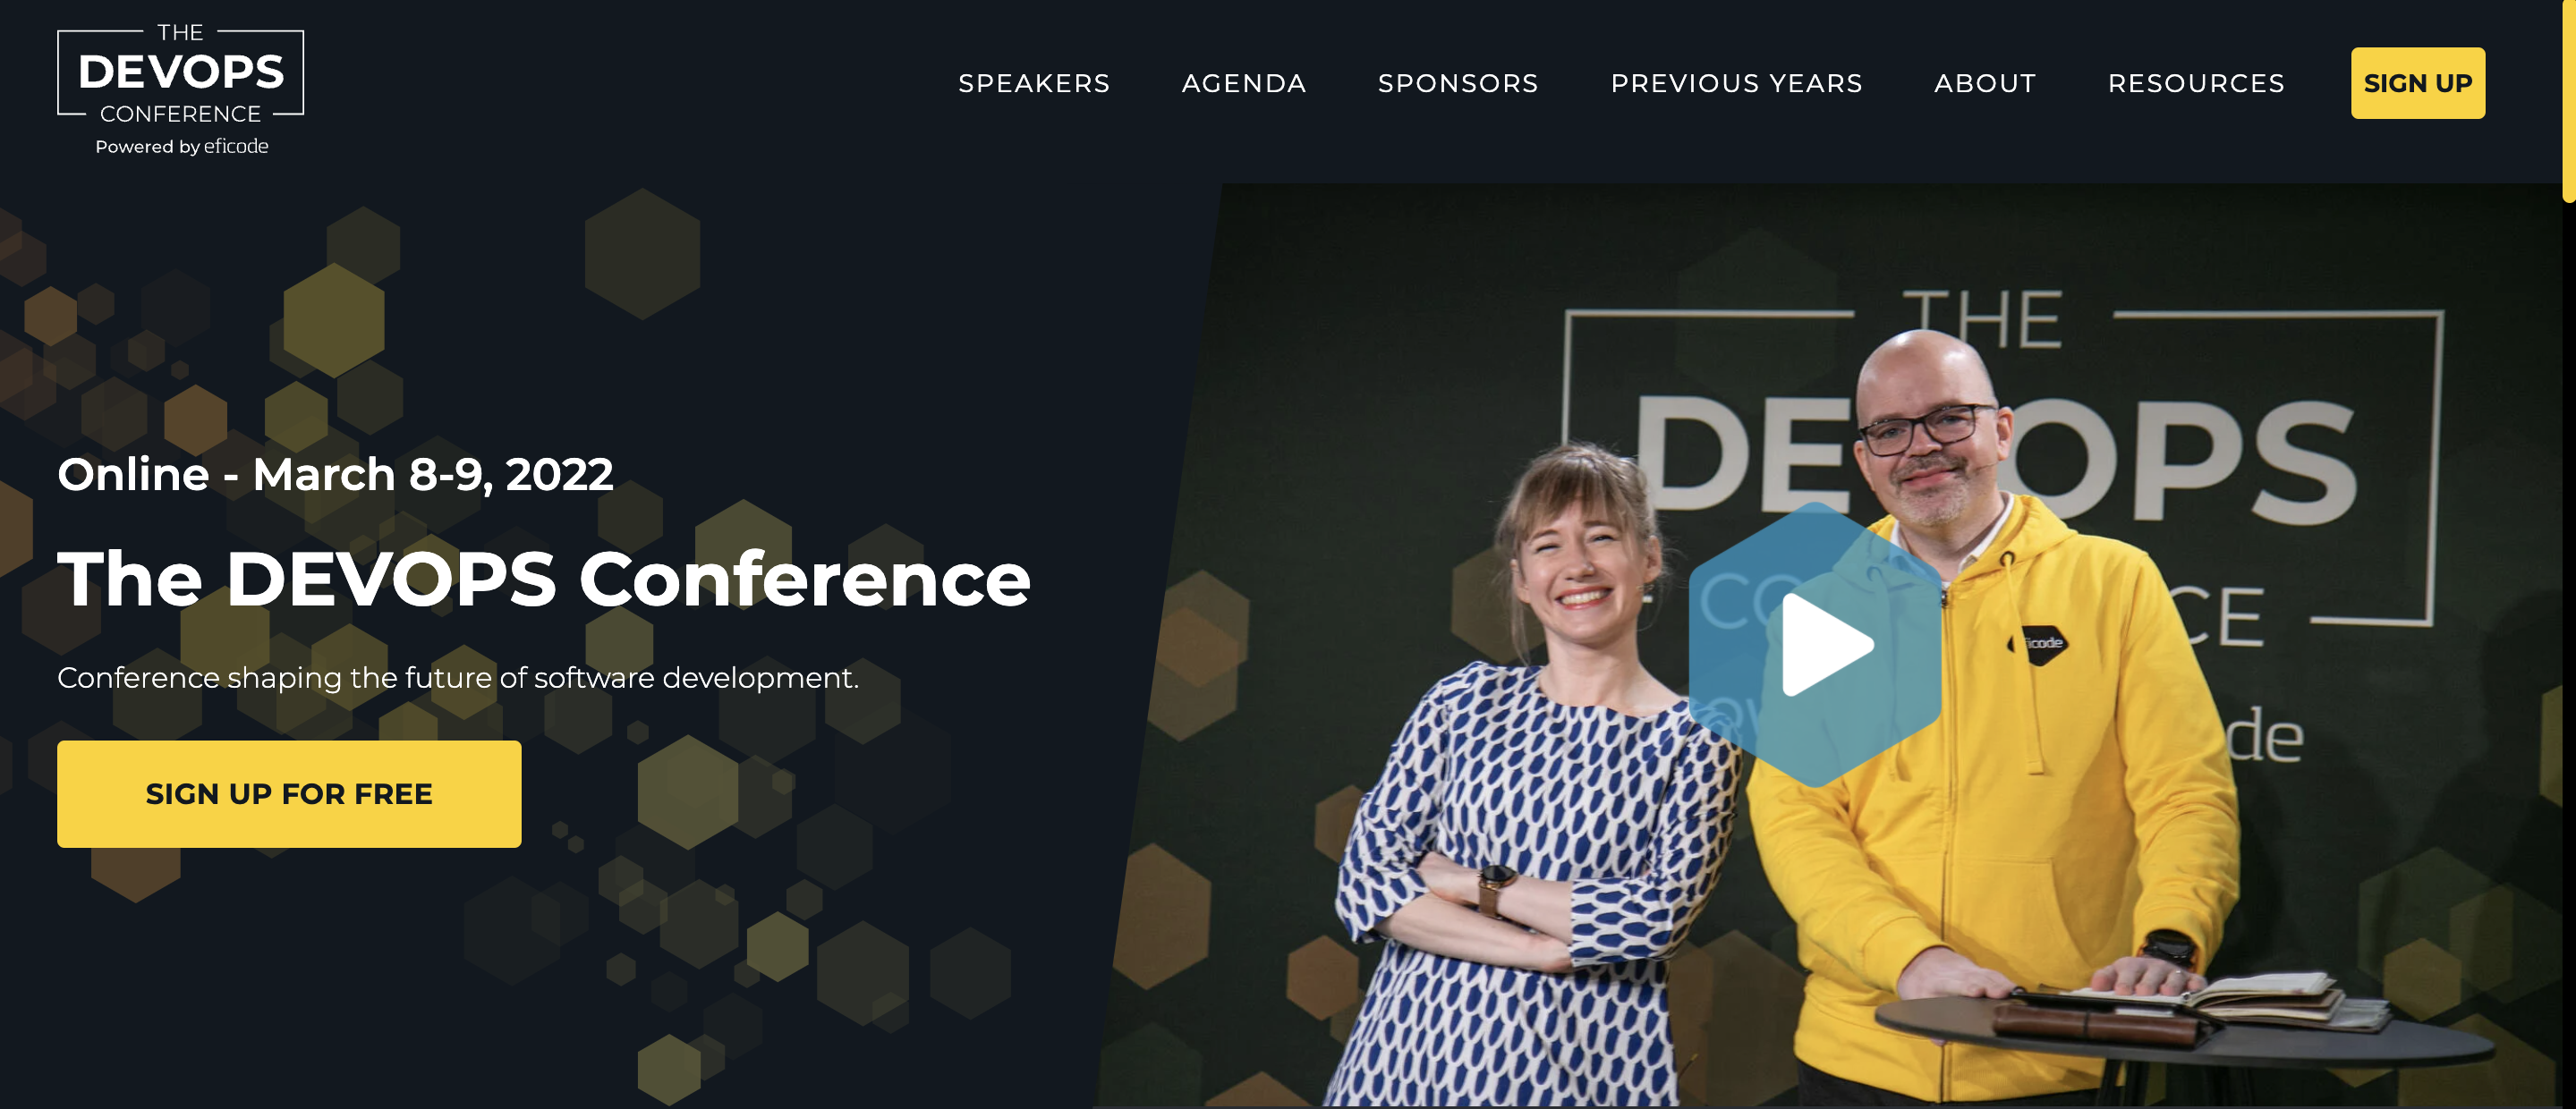 The Devops SaaS conference